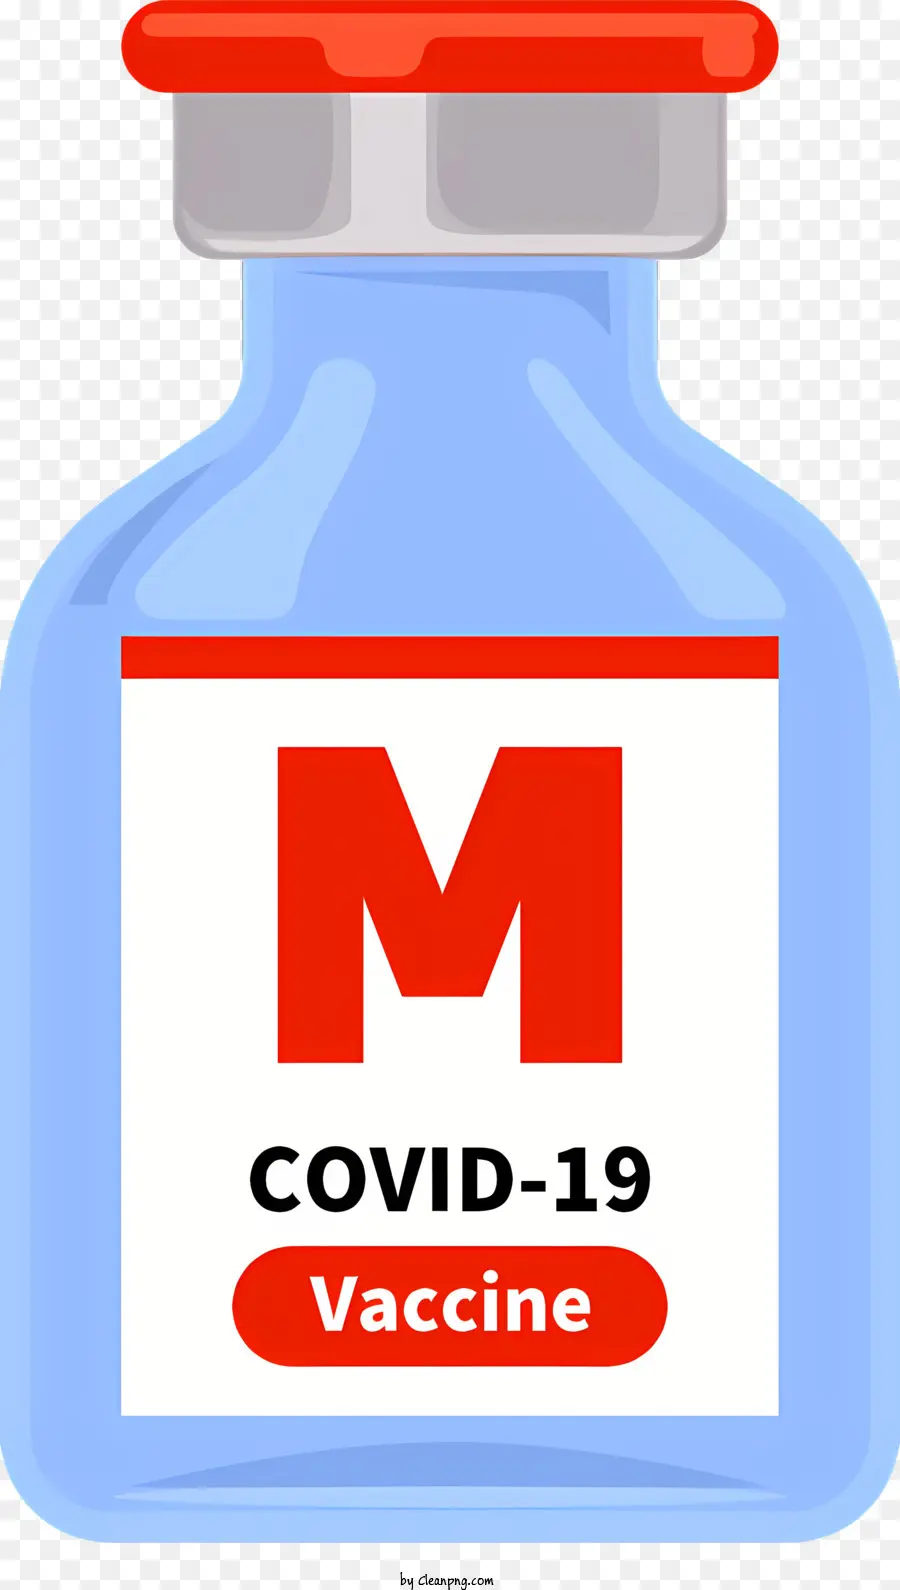 VACCINA COVID-19 VCIO COBRA MEDICO Prevenire la malattia respiratoria Covid-19 - VACCINO COBRA per prevenire Covid-19 nell'uomo